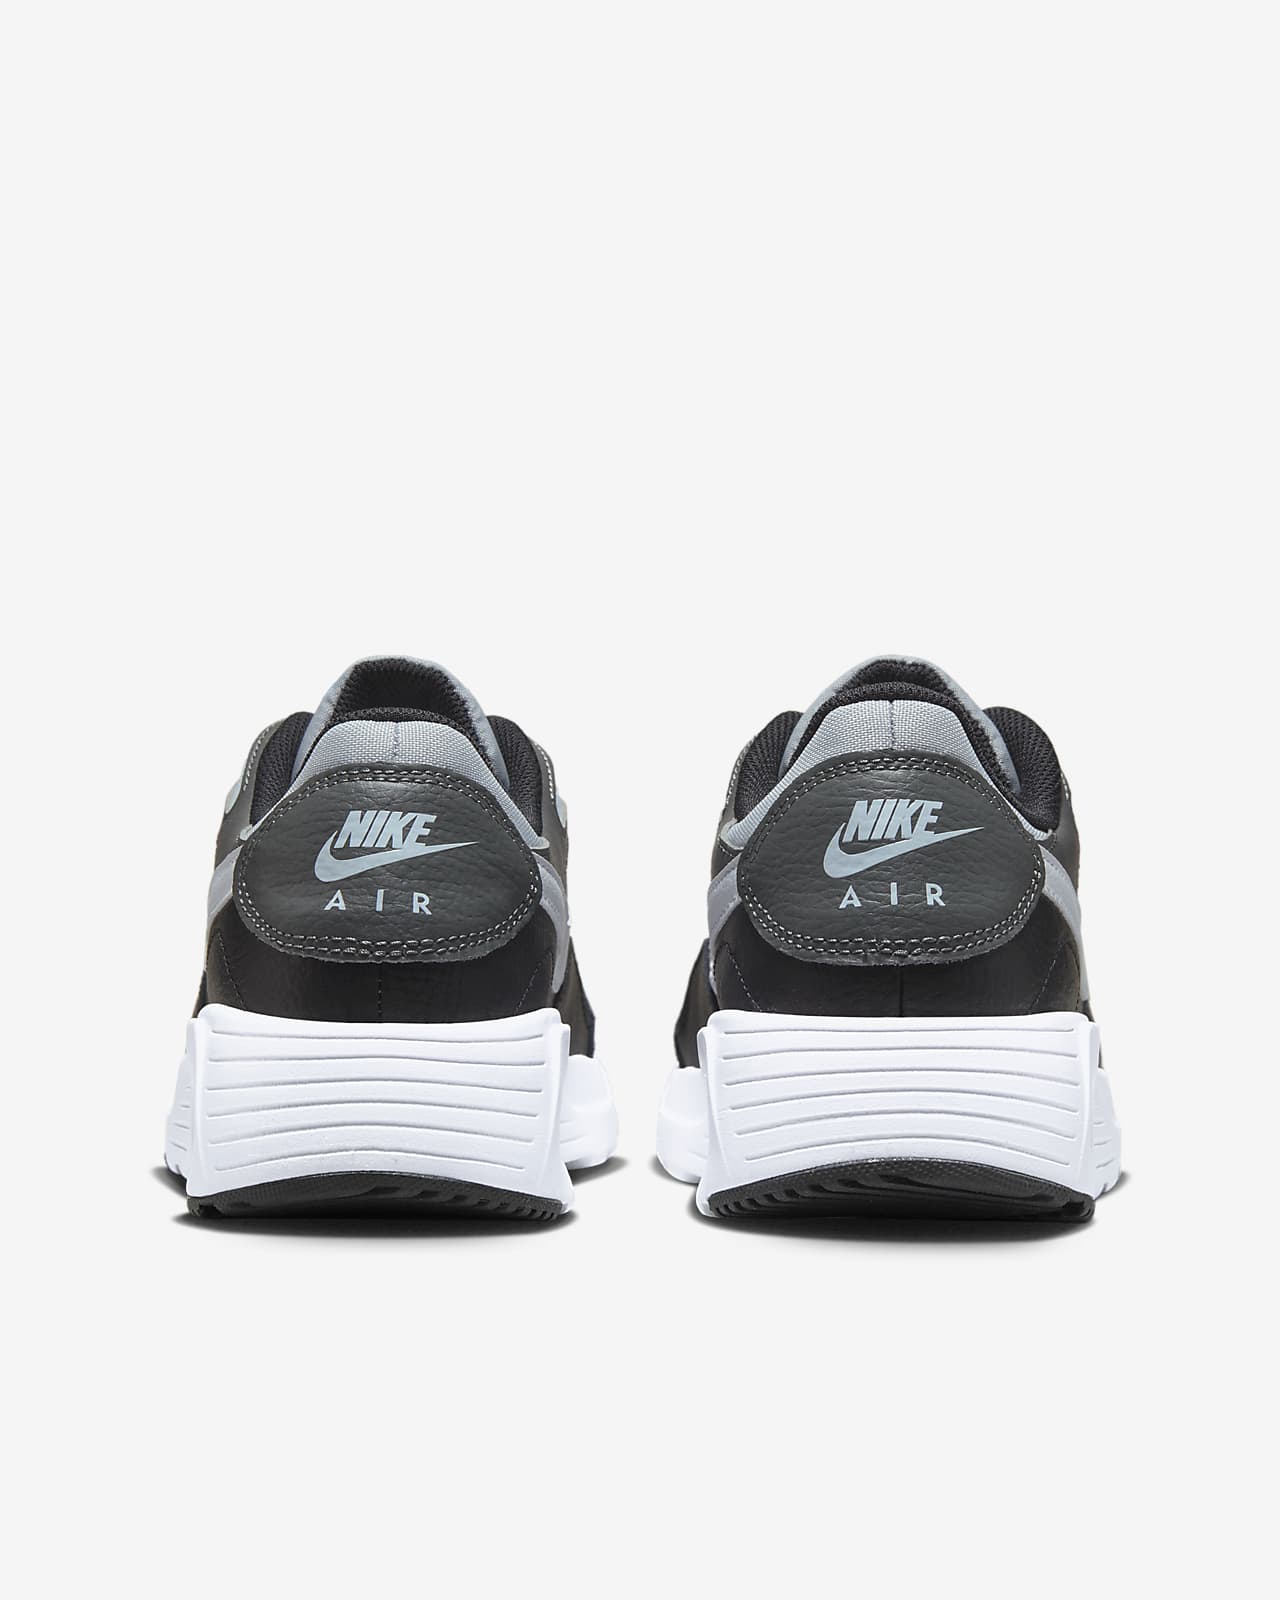 Nike Air Max SC Men's Shoes.